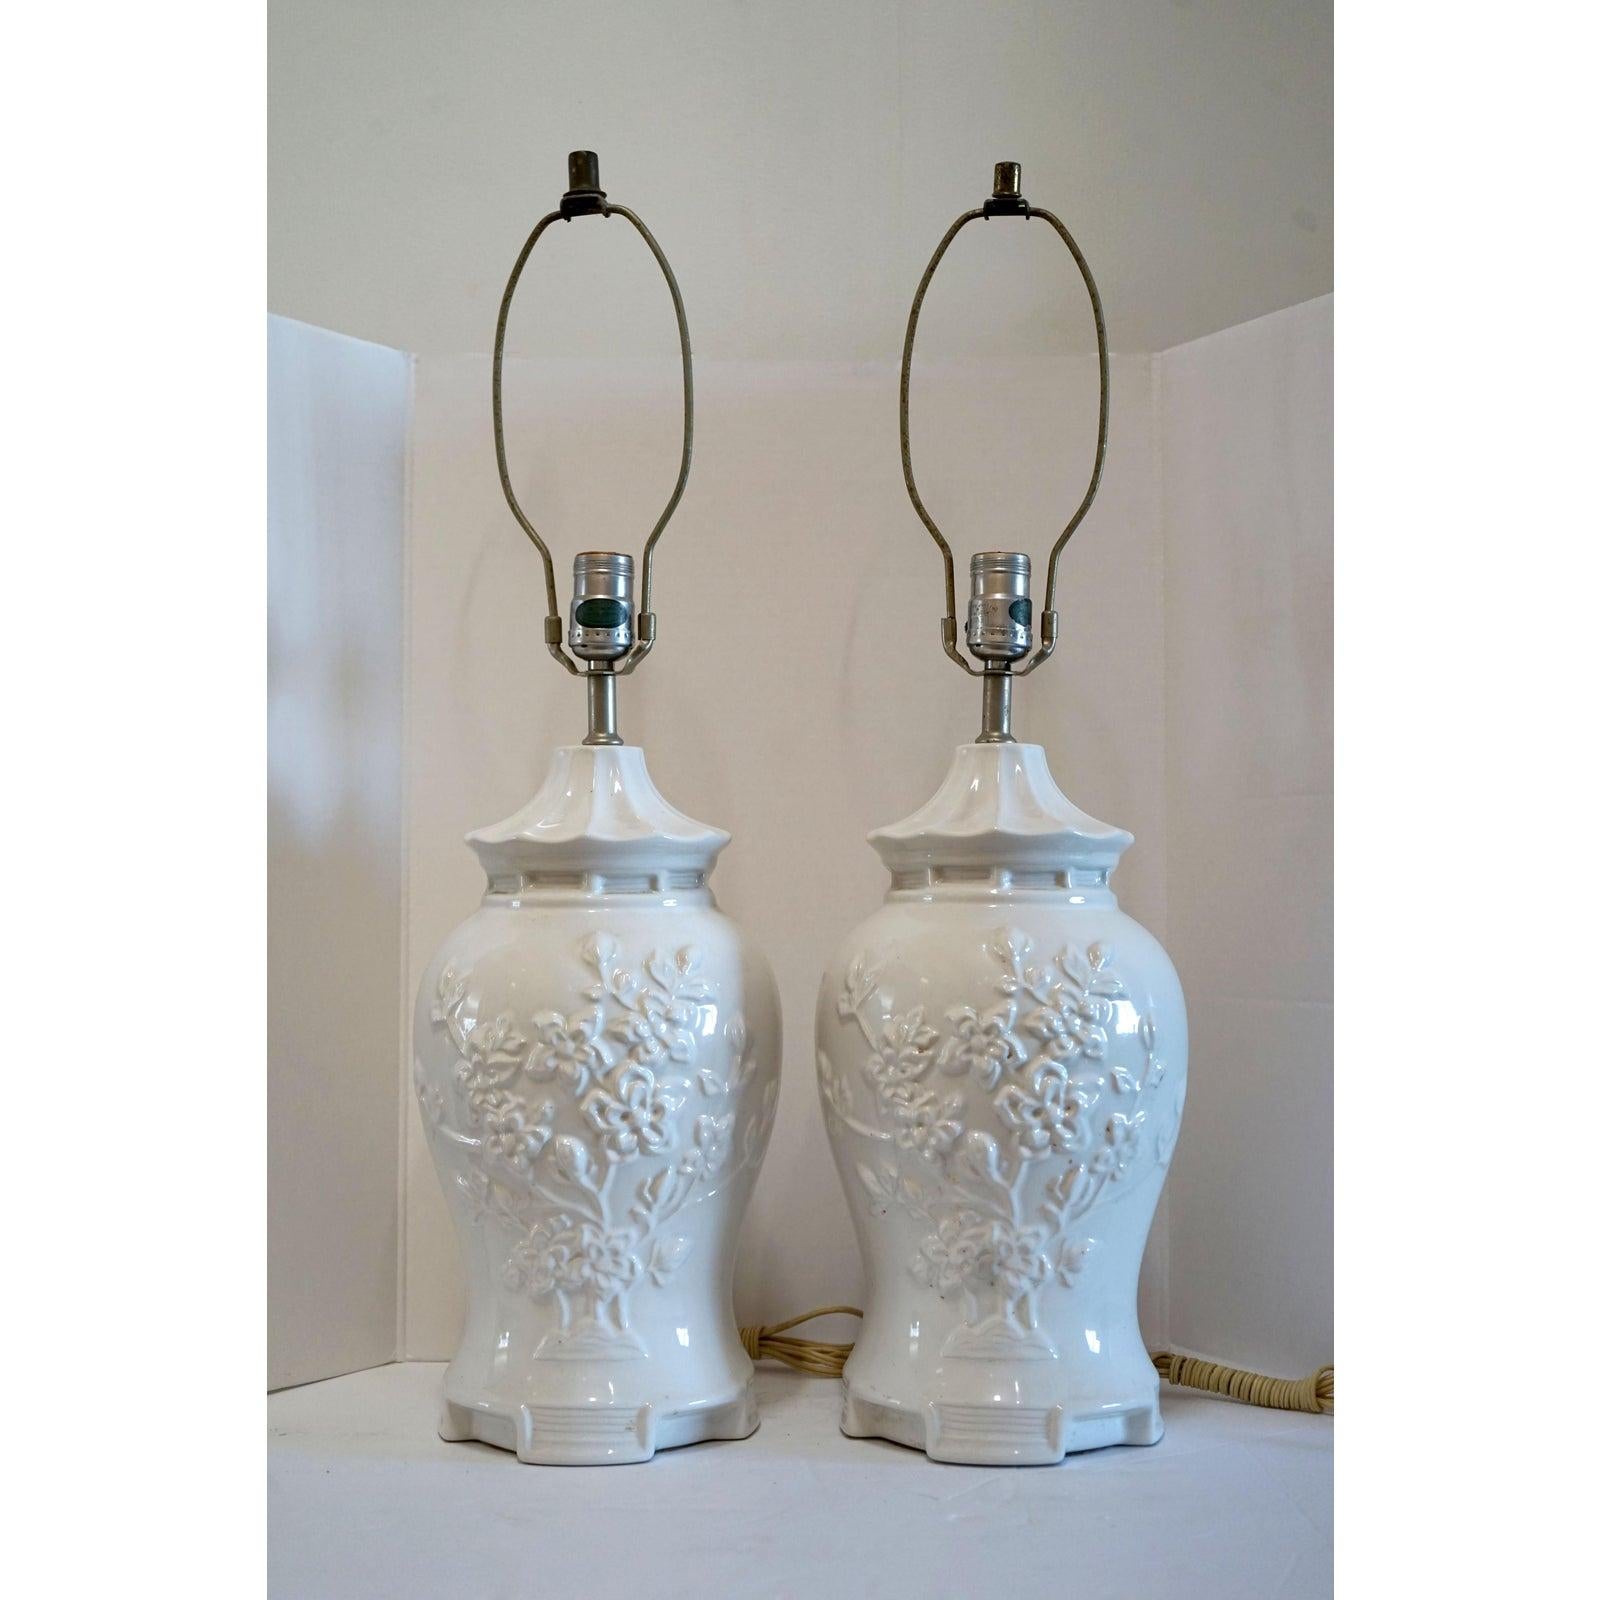 Cette paire de lampes en forme de pot du temple blanc de chine est de forme balustre ou pot à gingembre. Ils sont magnifiques avec la plus belle glaçure imaginable. Les lampes en porcelaine sont recouvertes, à l'avant et à l'arrière, de fleurs et de